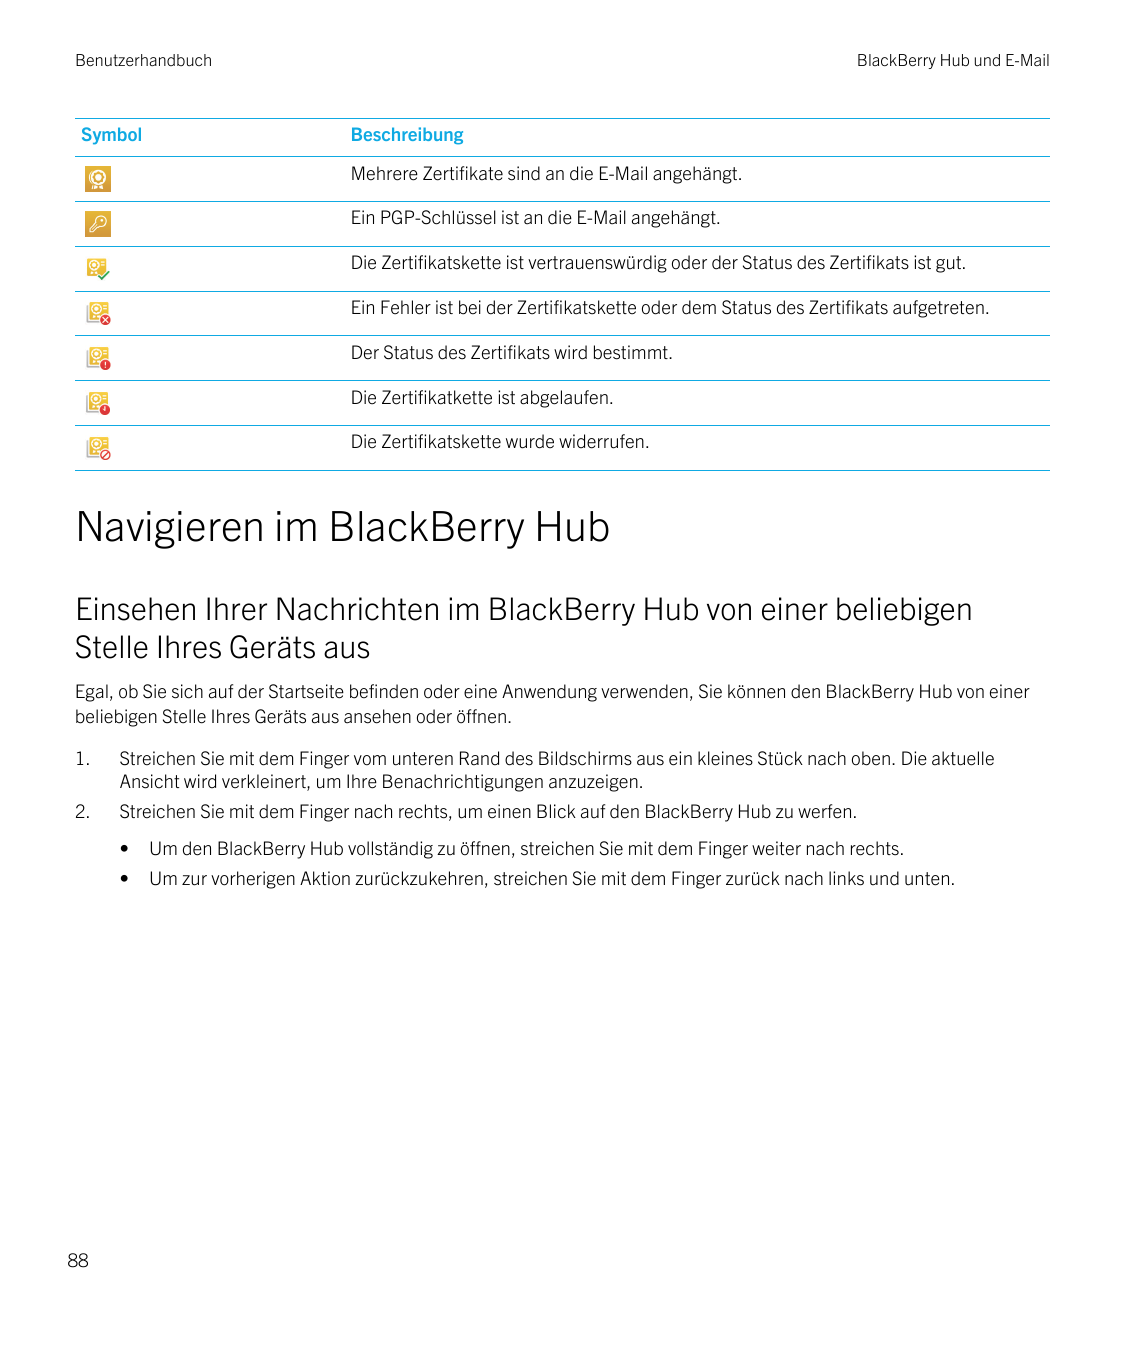 BenutzerhandbuchSymbolBlackBerry Hub und E-MailBeschreibungMehrere Zertifikate sind an die E-Mail angehängt.Ein PGP-Schlüssel is